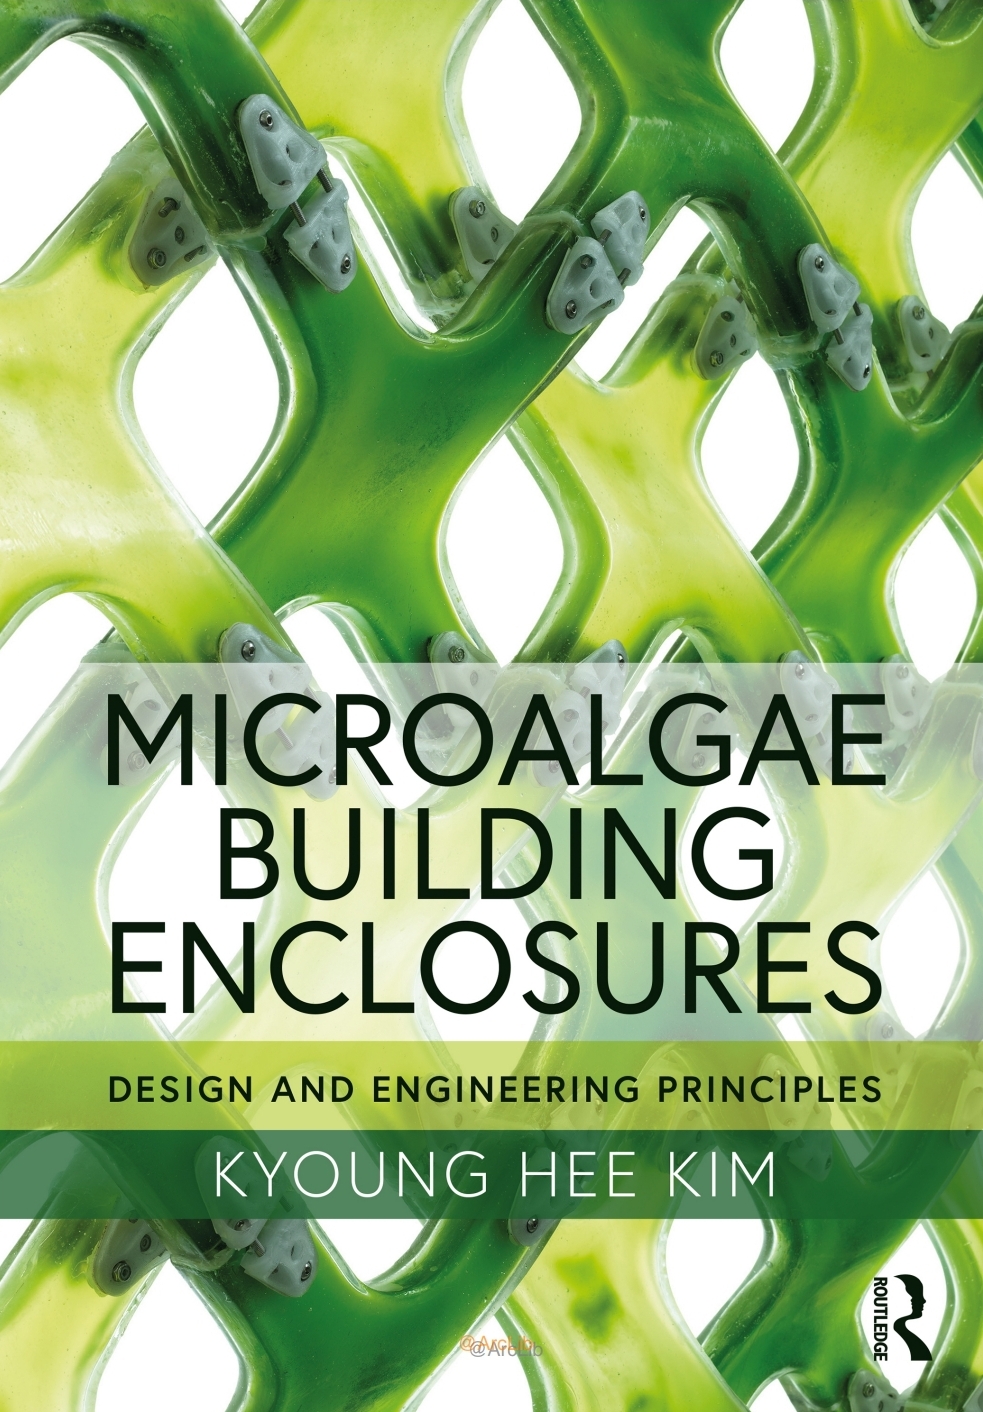 Microalgae Building Enclosures